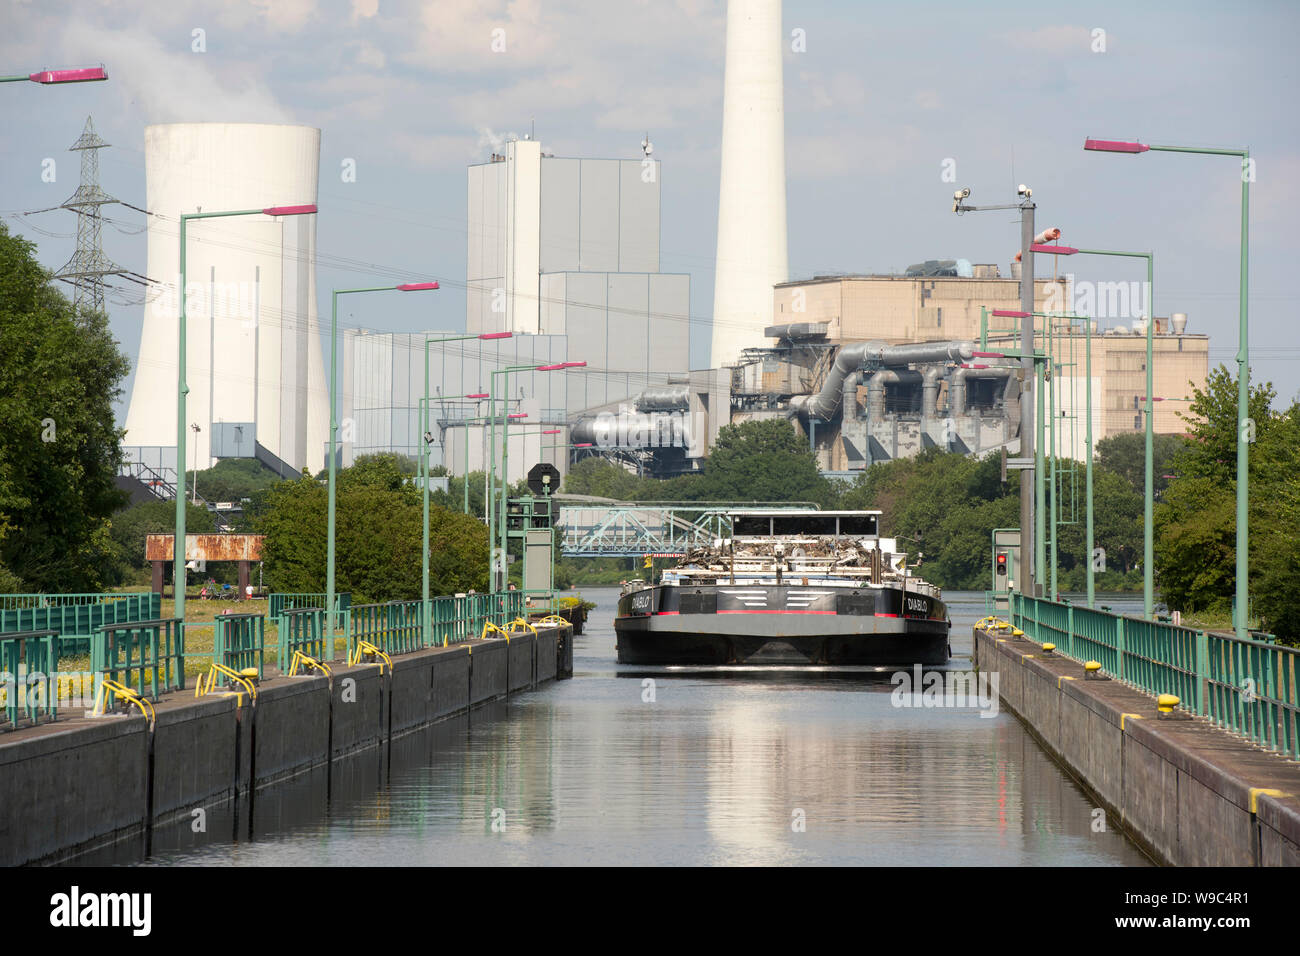 Deutschland, Ruhrgebiet, Wanne-Eickel, Schleuse Herne Crange am Rhein-Herne-Kanal, im Hintergrund das Steag Kraftwerk a Herne Foto Stock